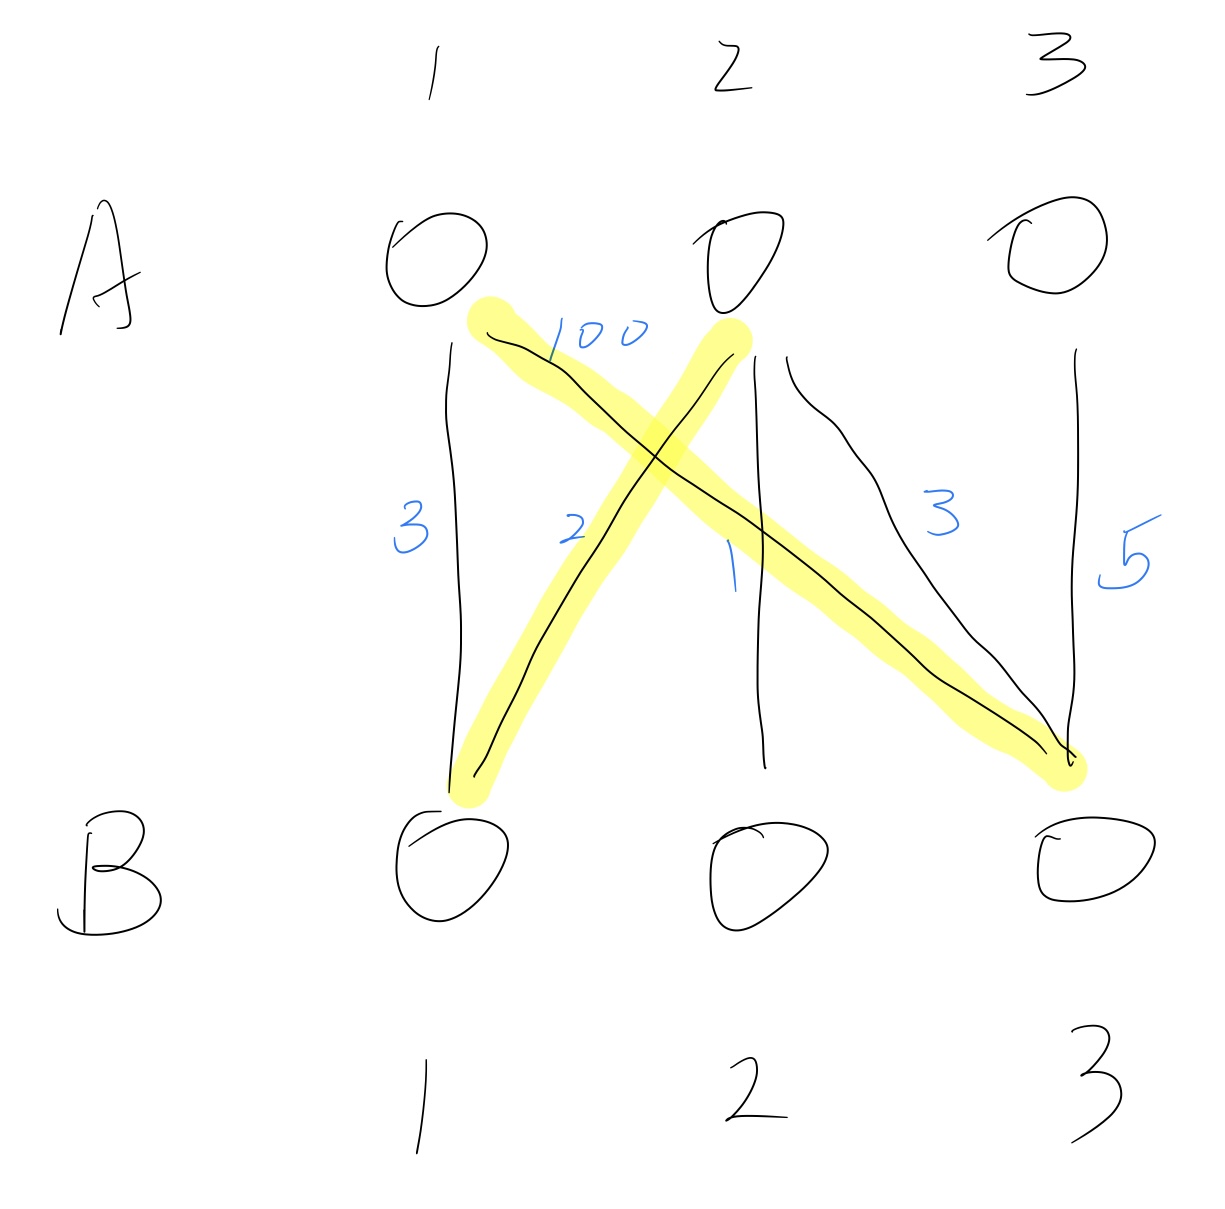 最大匹配M=(A1, B3), (A2, B1)